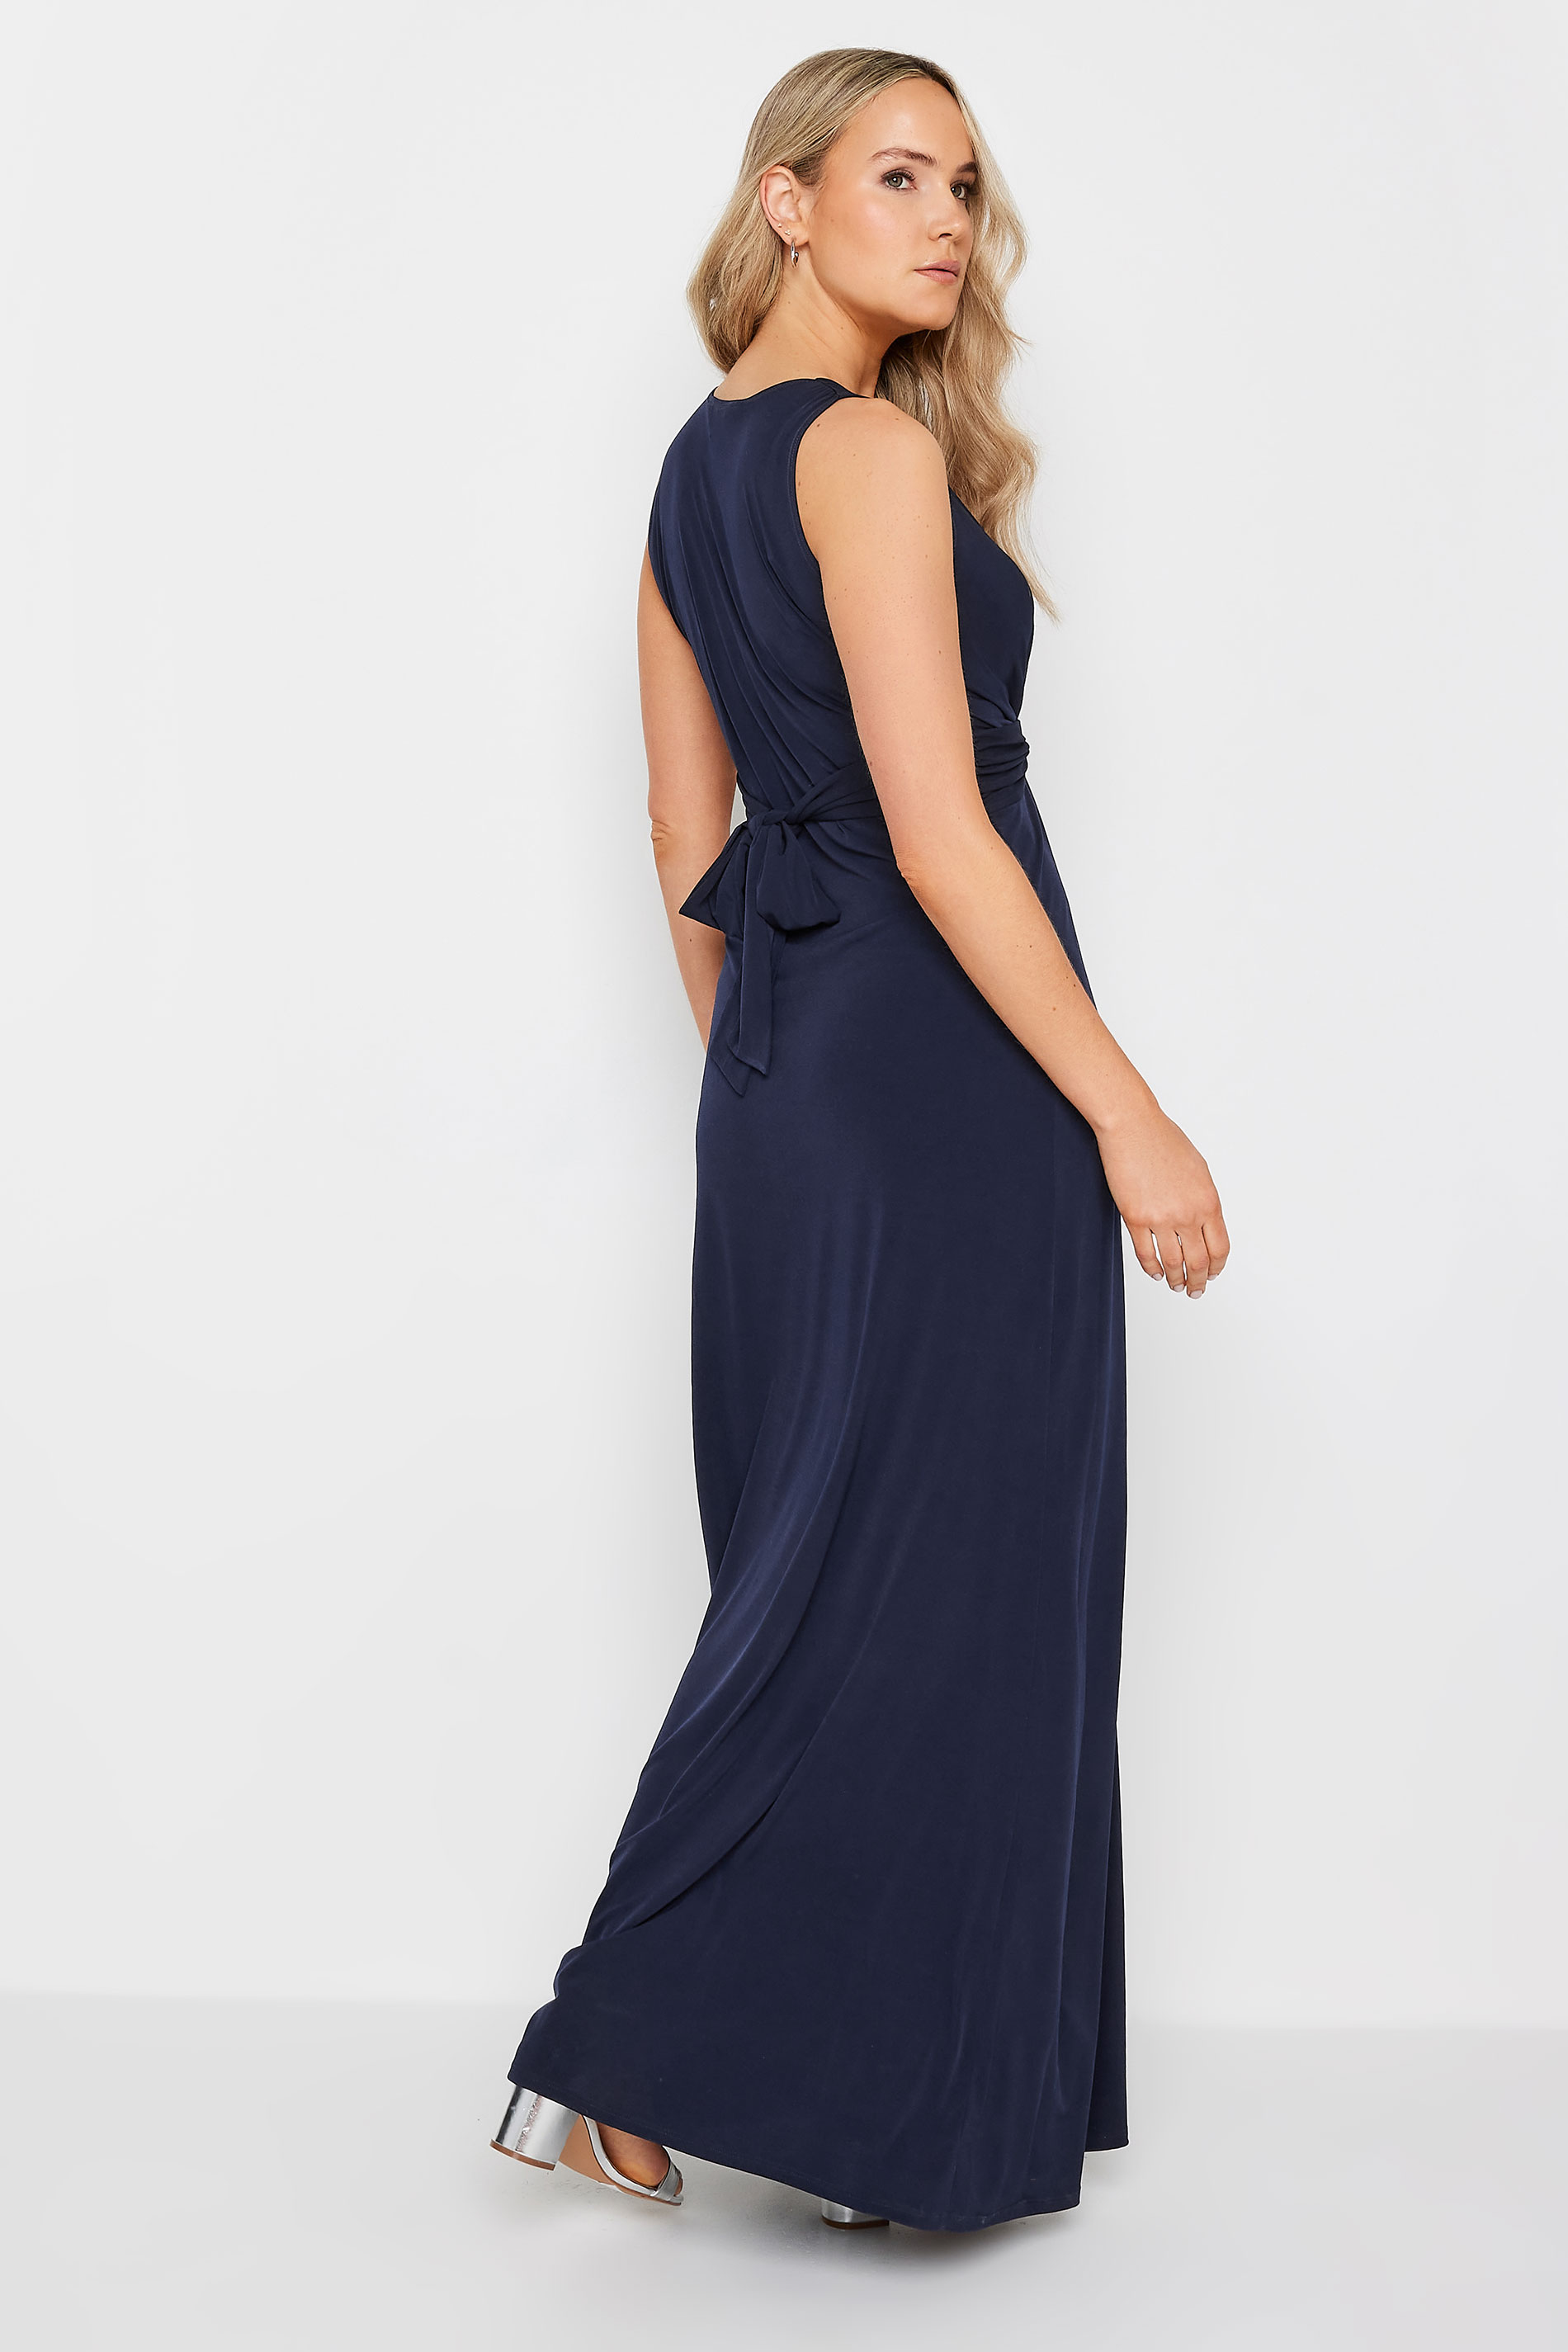 LTS Tall Womens Navy Blue Knot Front Maxi Dress | Long Tall Sally 3